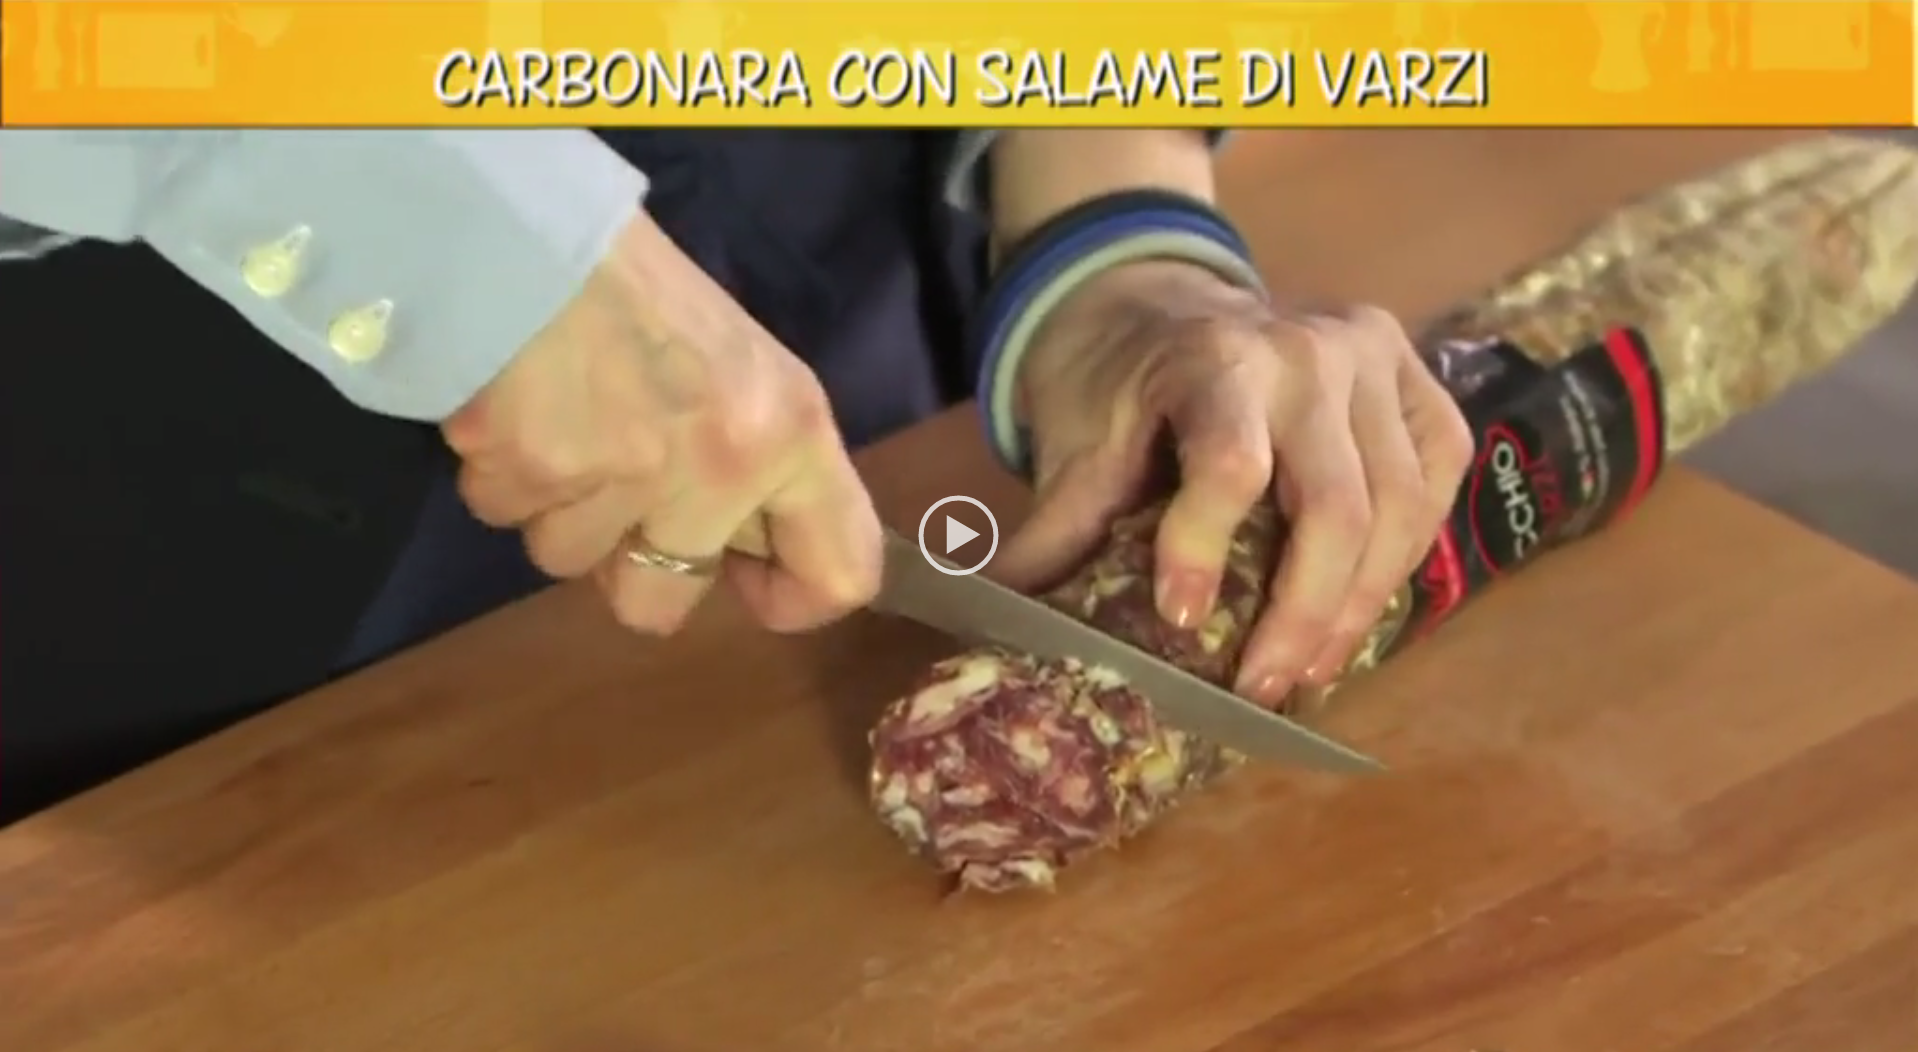 La Food Blogger Monny B. Propone Una Insolita Carbonara Con Salame Vecchio Varzi DOP